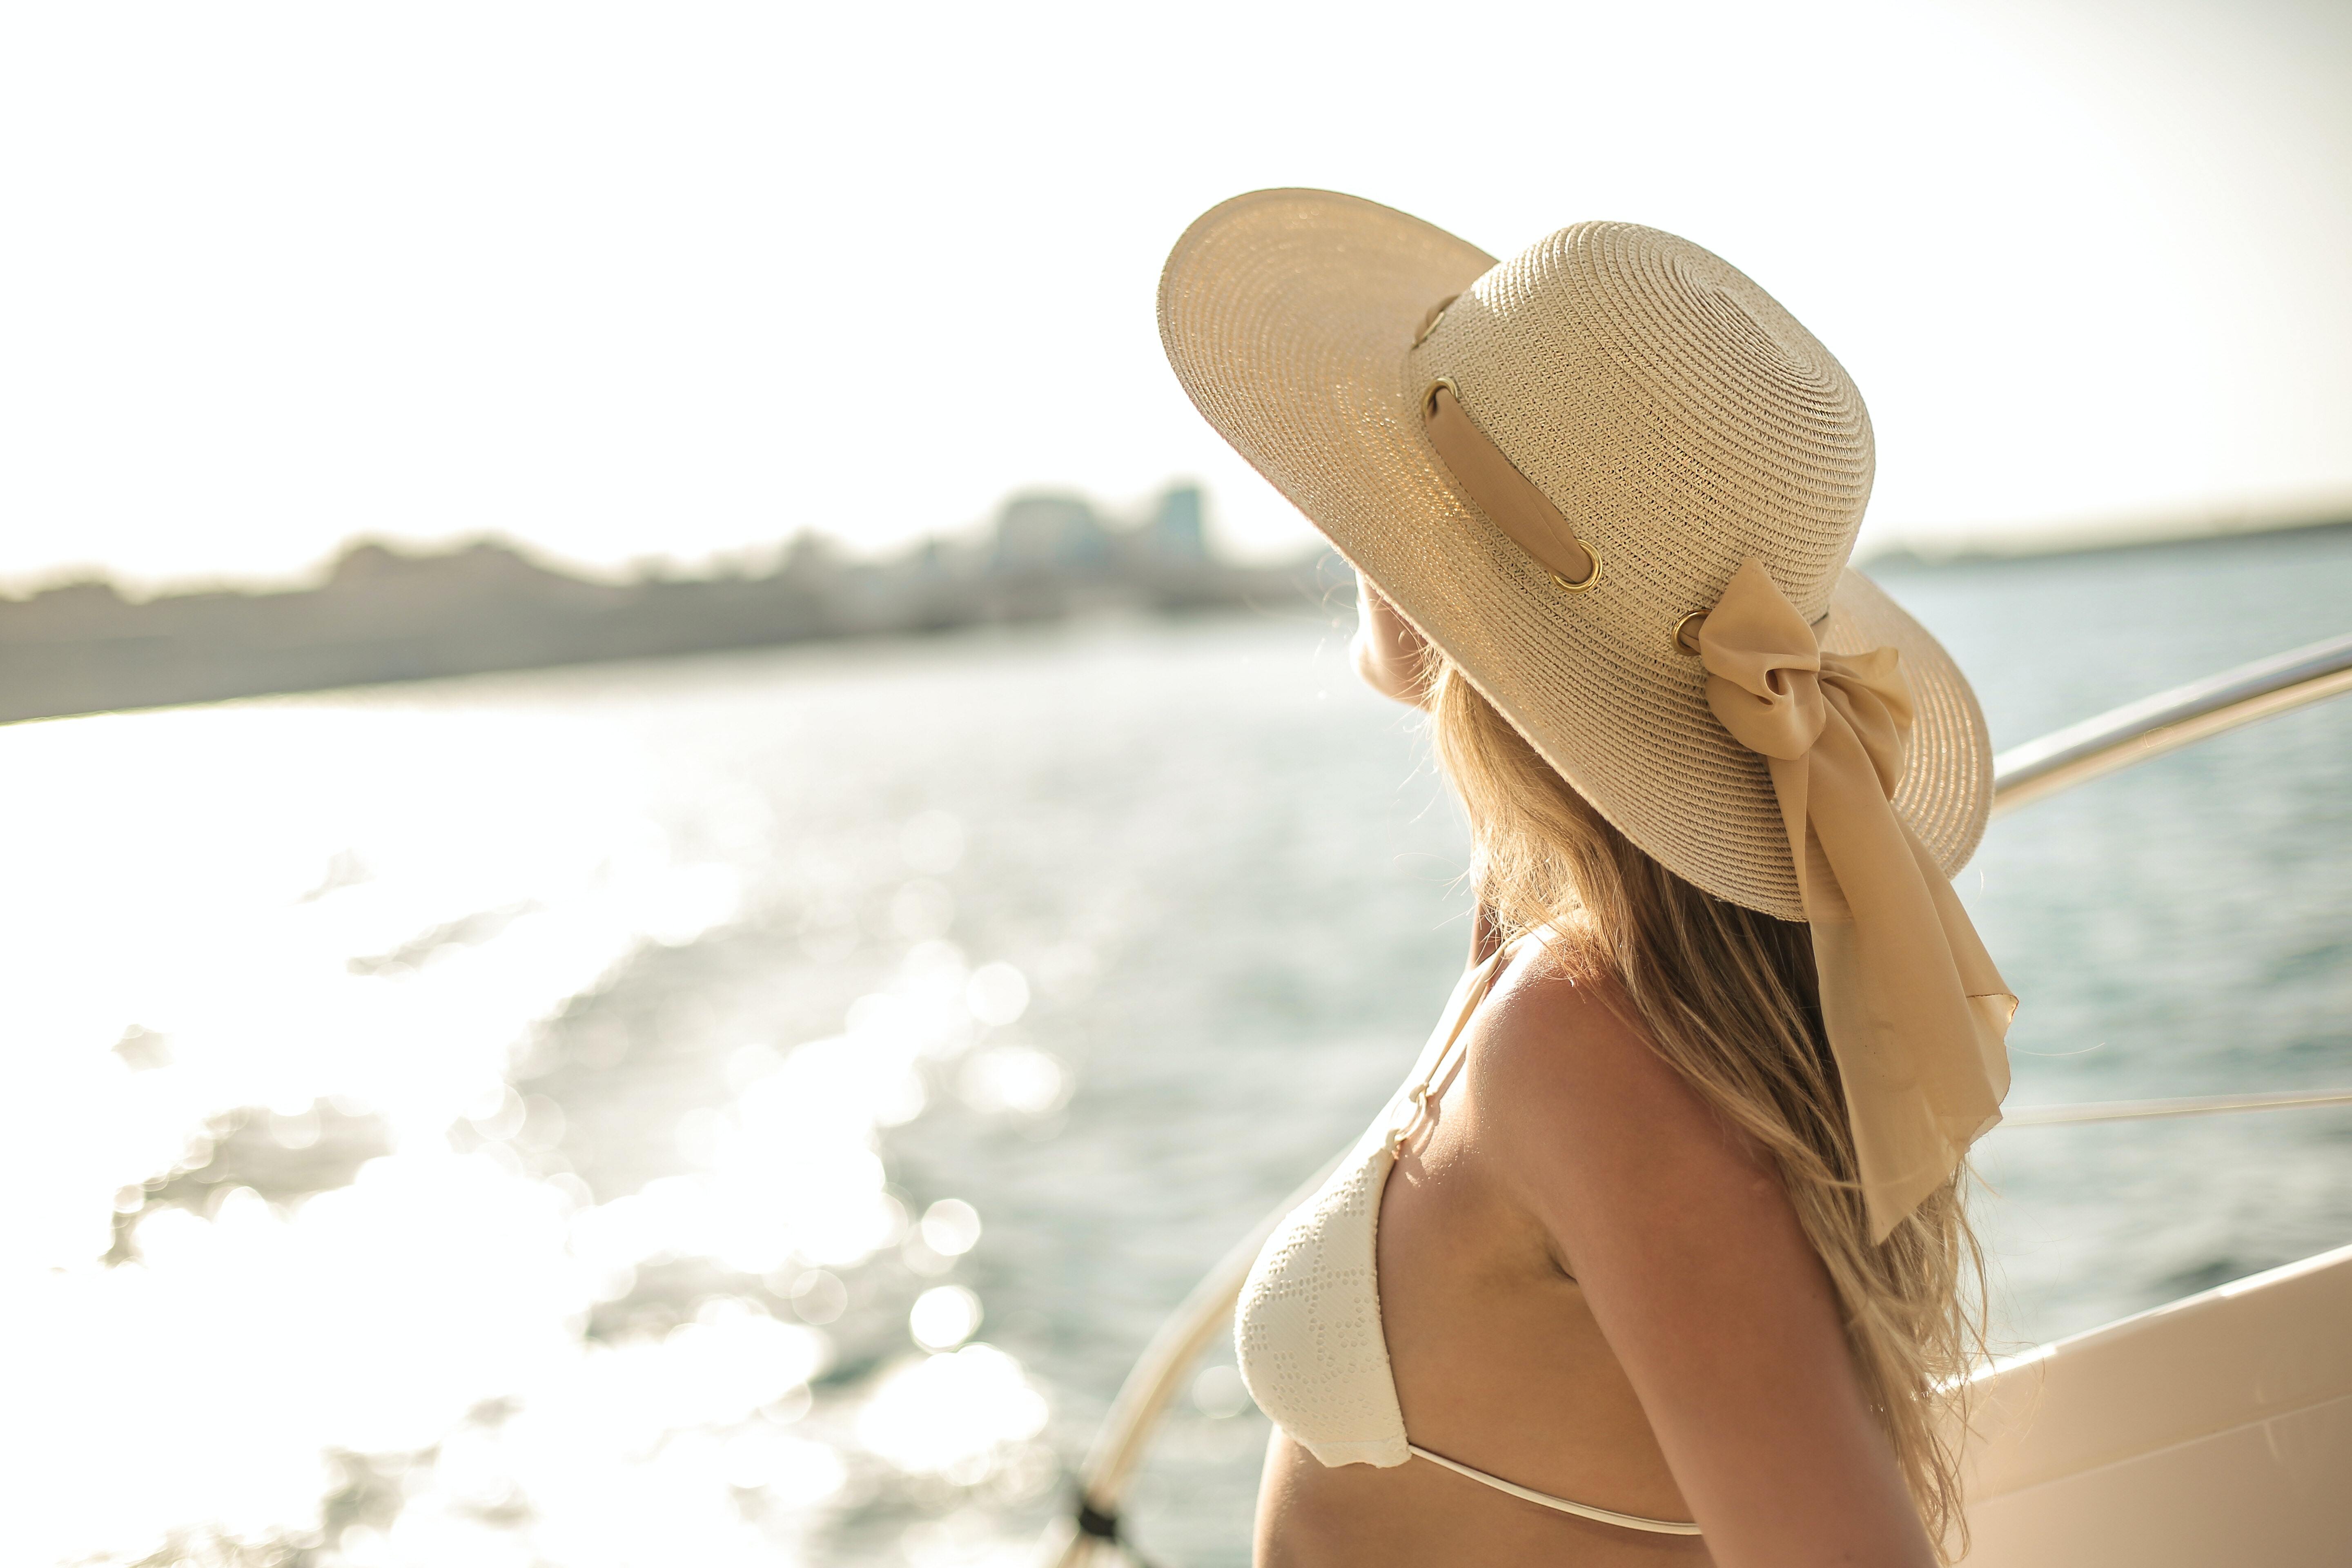 Картинка: Девушка, день, шляпа, купальник, яхта, море, размытость, горизонт